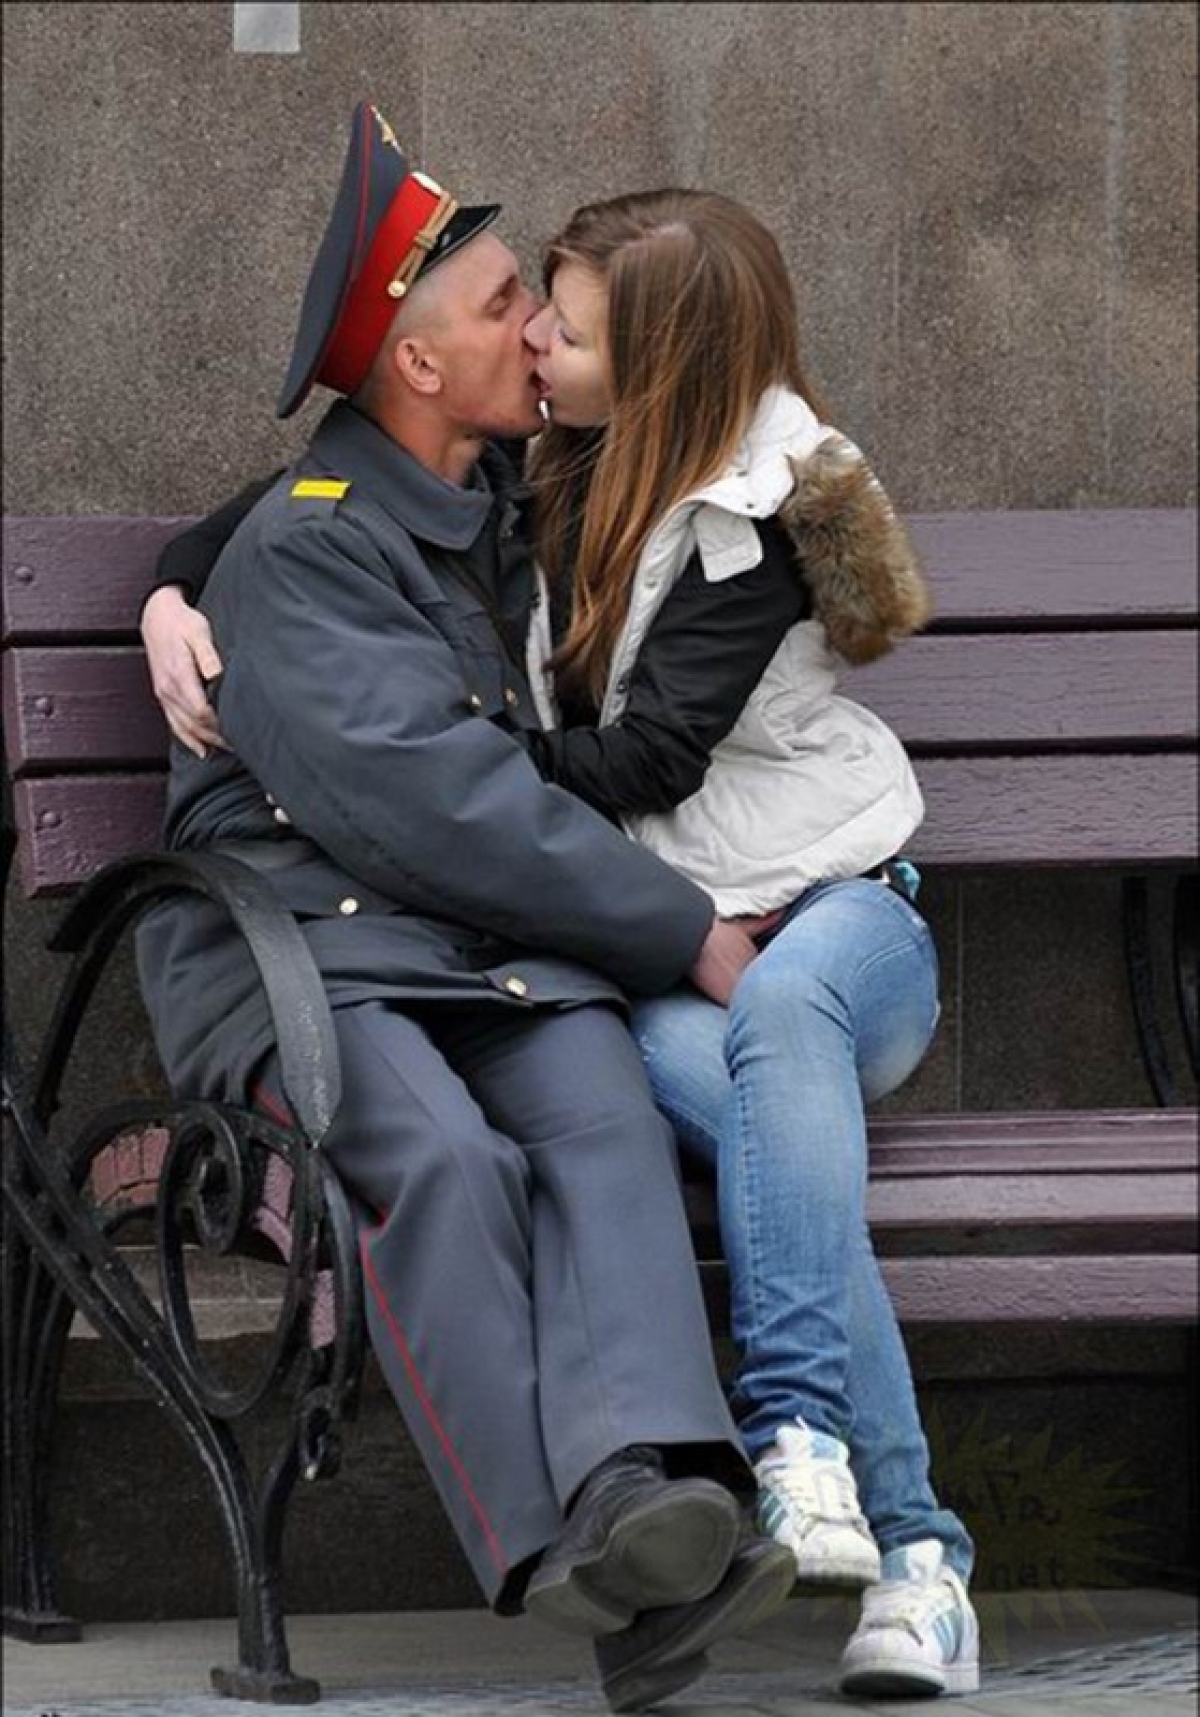 Лапает прохожих. Целующийся милиоцеонеры. Целующиеся милиционеры. Девушка с полицейским парнем. Поцелуй с полицейским.